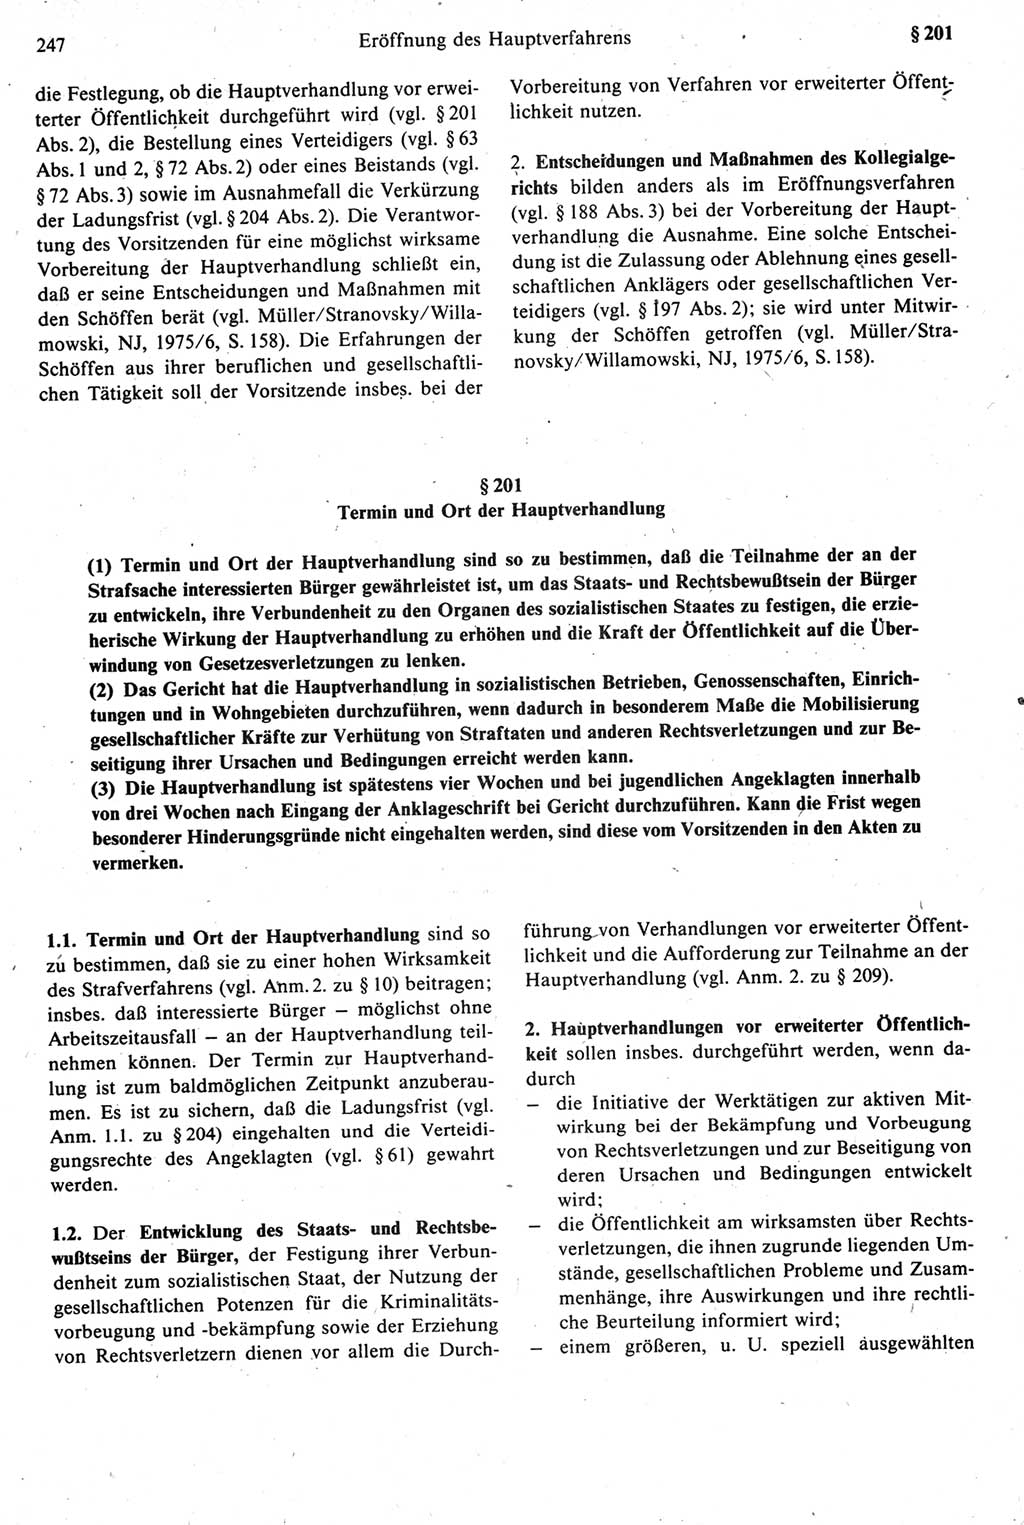 Strafprozeßrecht der DDR [Deutsche Demokratische Republik], Kommentar zur Strafprozeßordnung (StPO) 1987, Seite 247 (Strafprozeßr. DDR Komm. StPO 1987, S. 247)